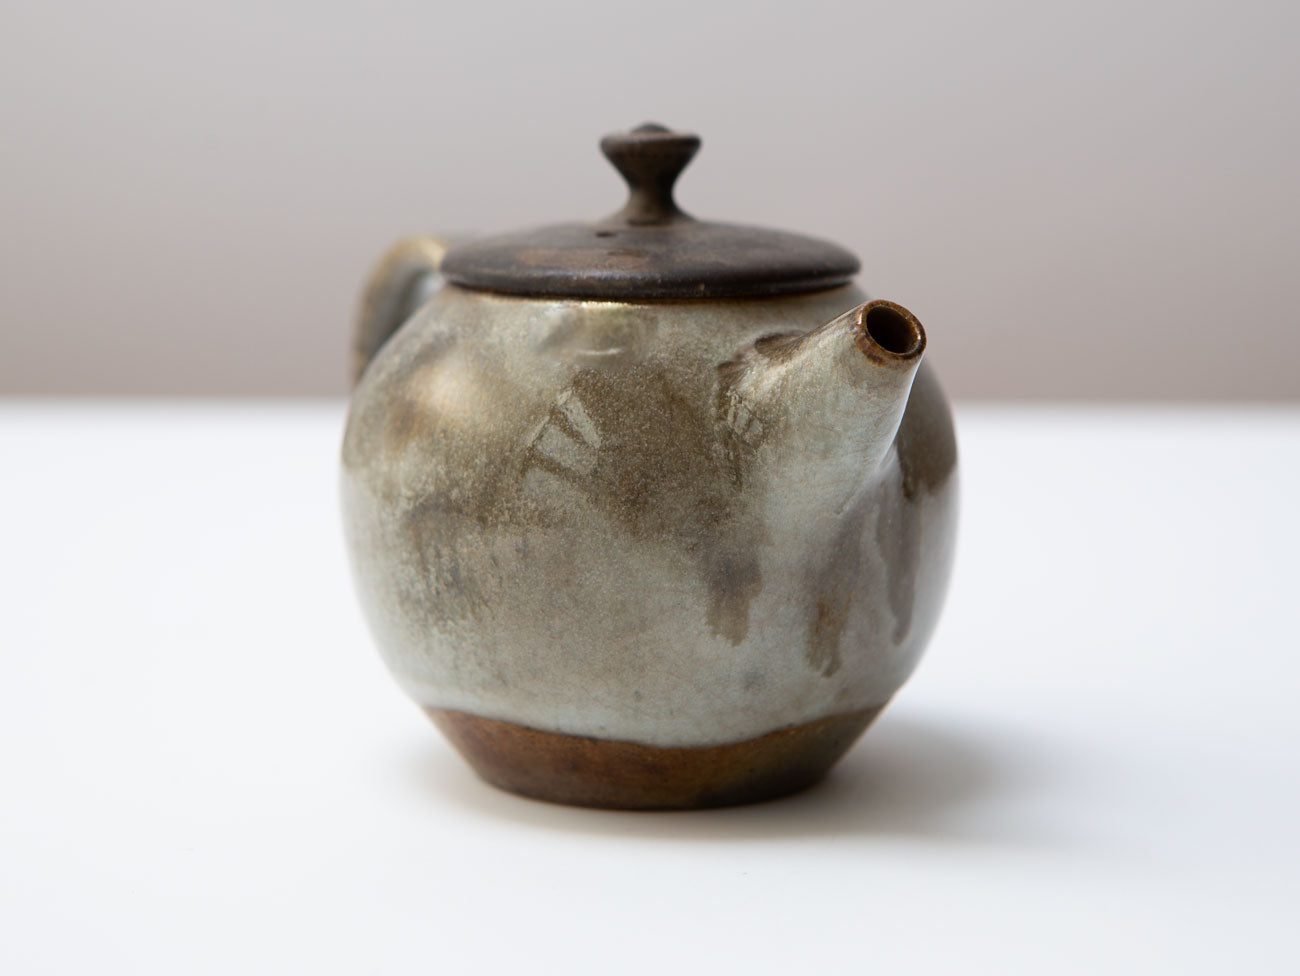 Mist. A wood-fired teapot. Liao Guo Hua